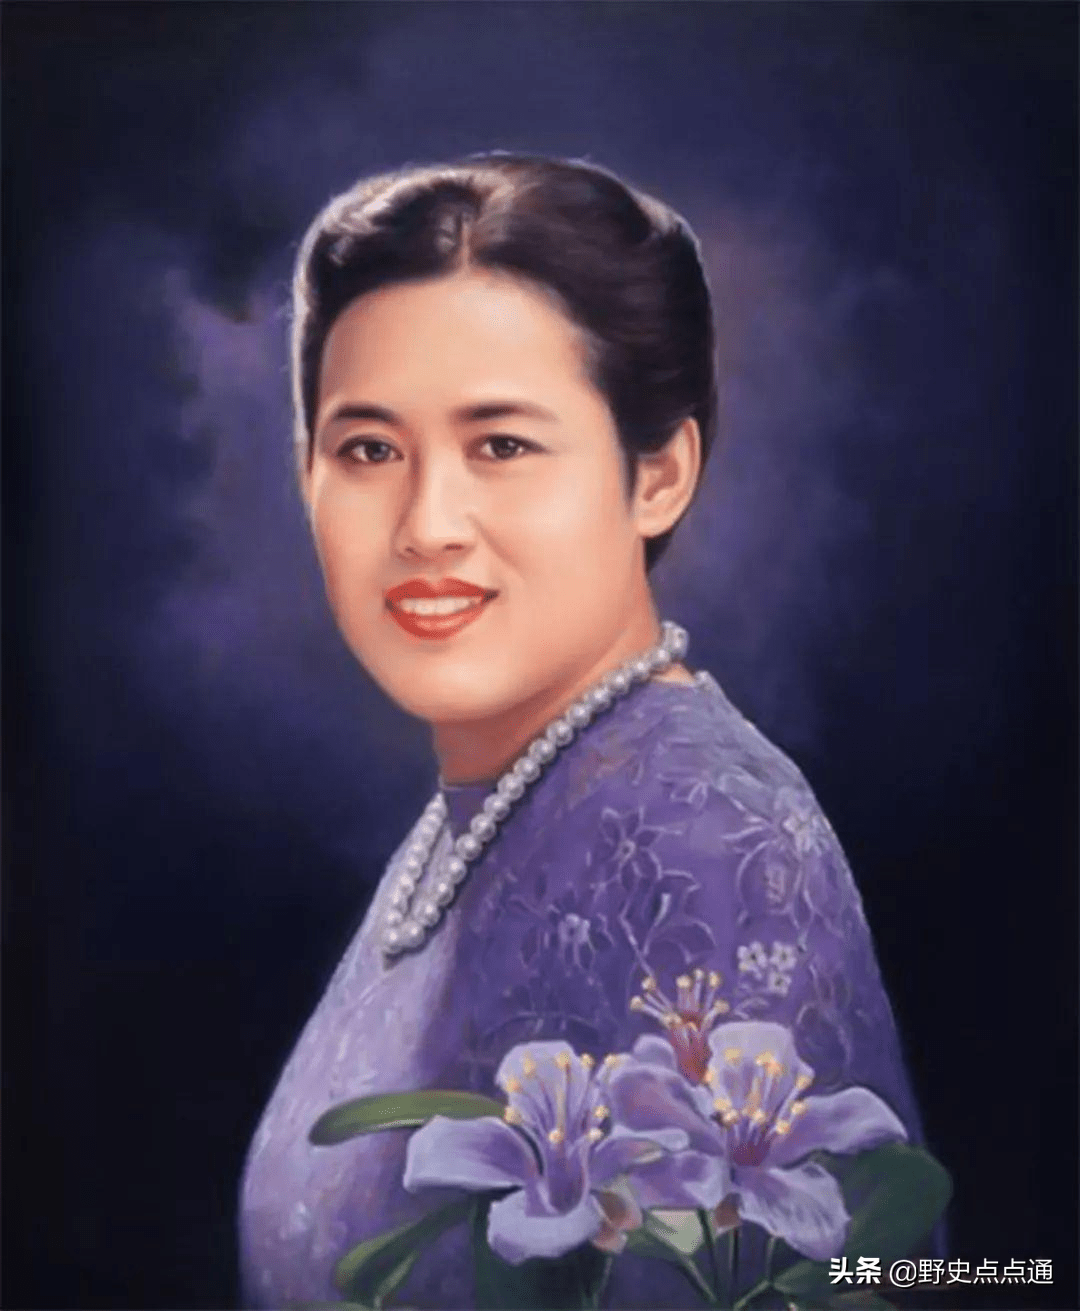 泰国乌汶叻公主亲临清莱睡美人洞